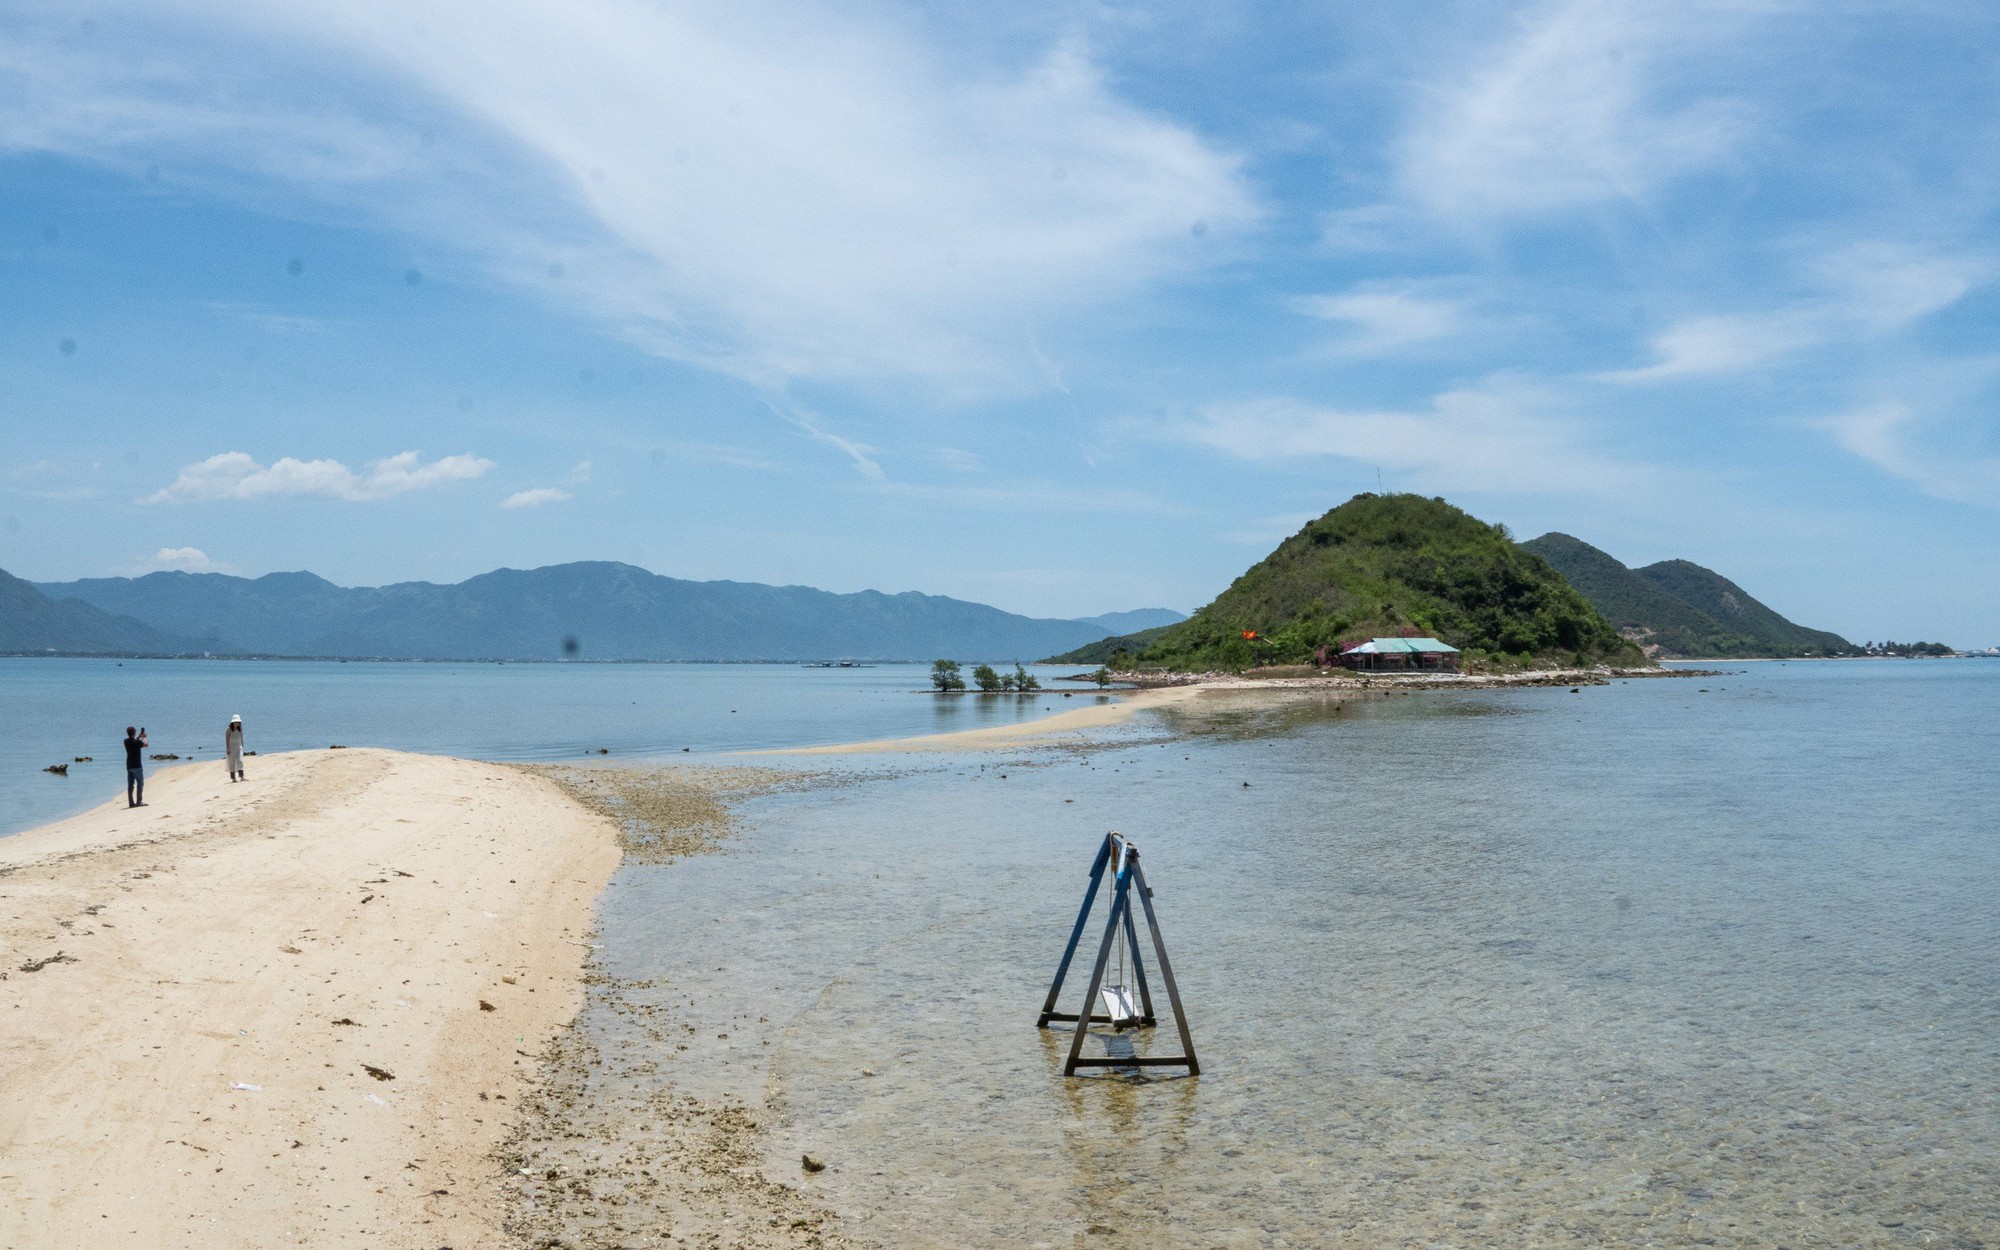 Có lẽ nào đây là làng sở hữu nhiều hòn đảo nhất ở Khánh Hòa, nằm trong vịnh biển đẹp như phim?- Ảnh 6.